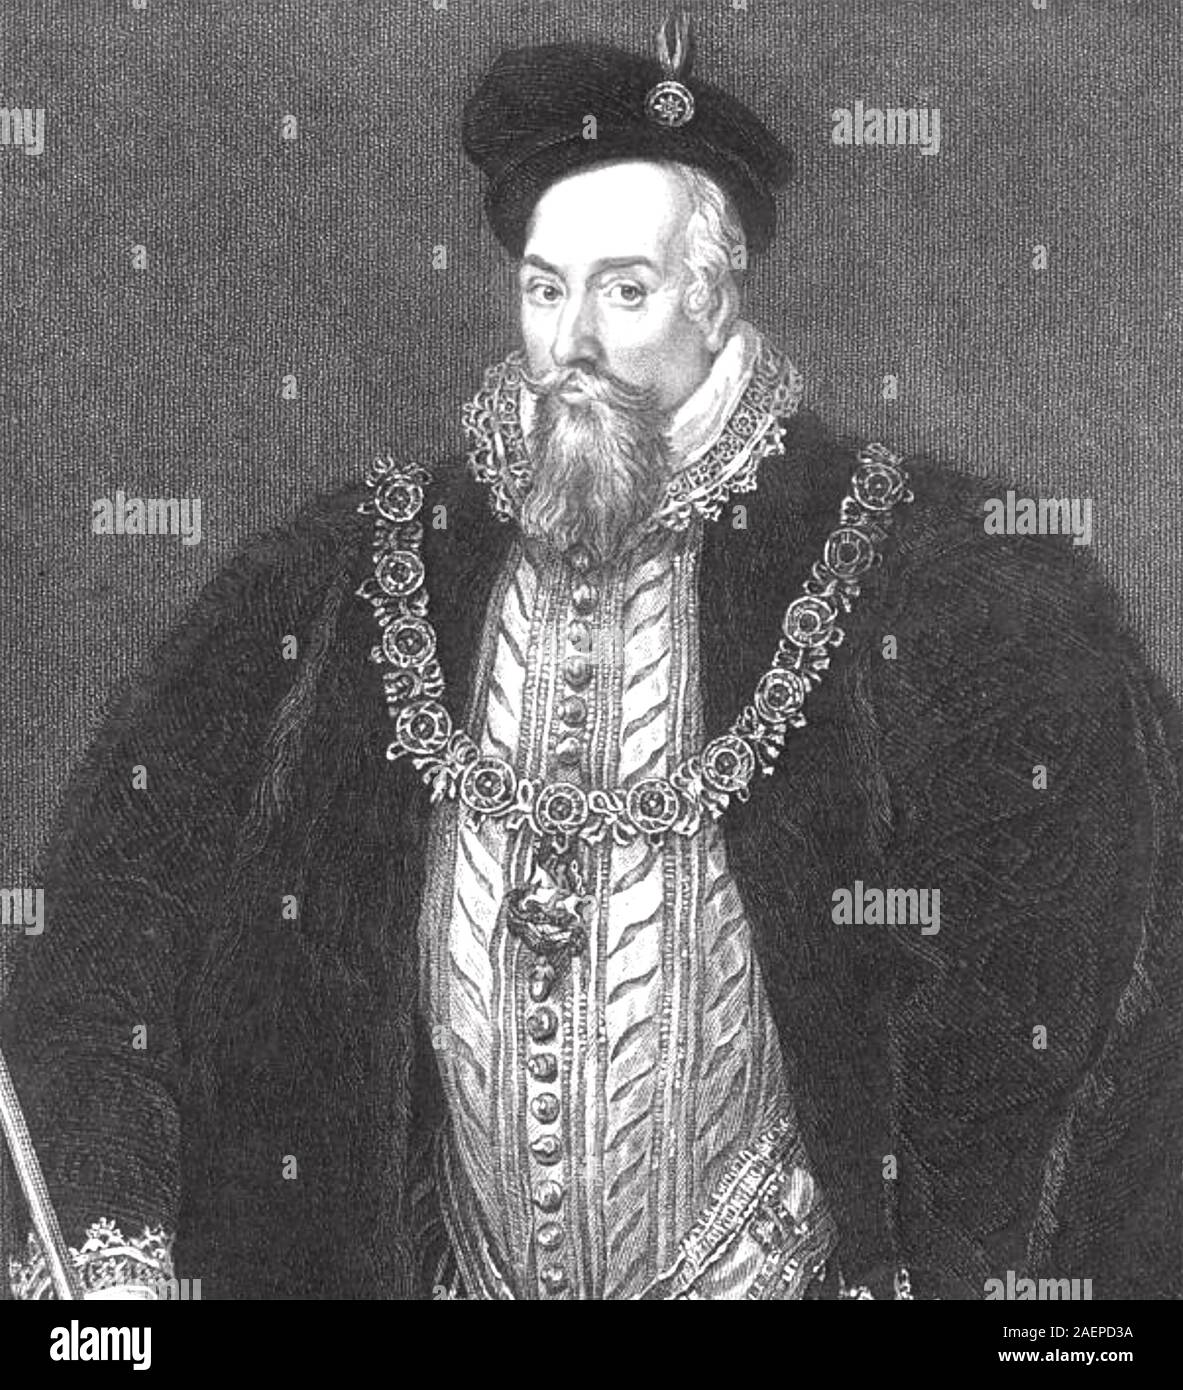 ROBERT DEVEREUX, 2nd Earl of Essex (1565-1601) Englischer Soldat und Gericht Liebling von Elizabeth I. Stockfoto